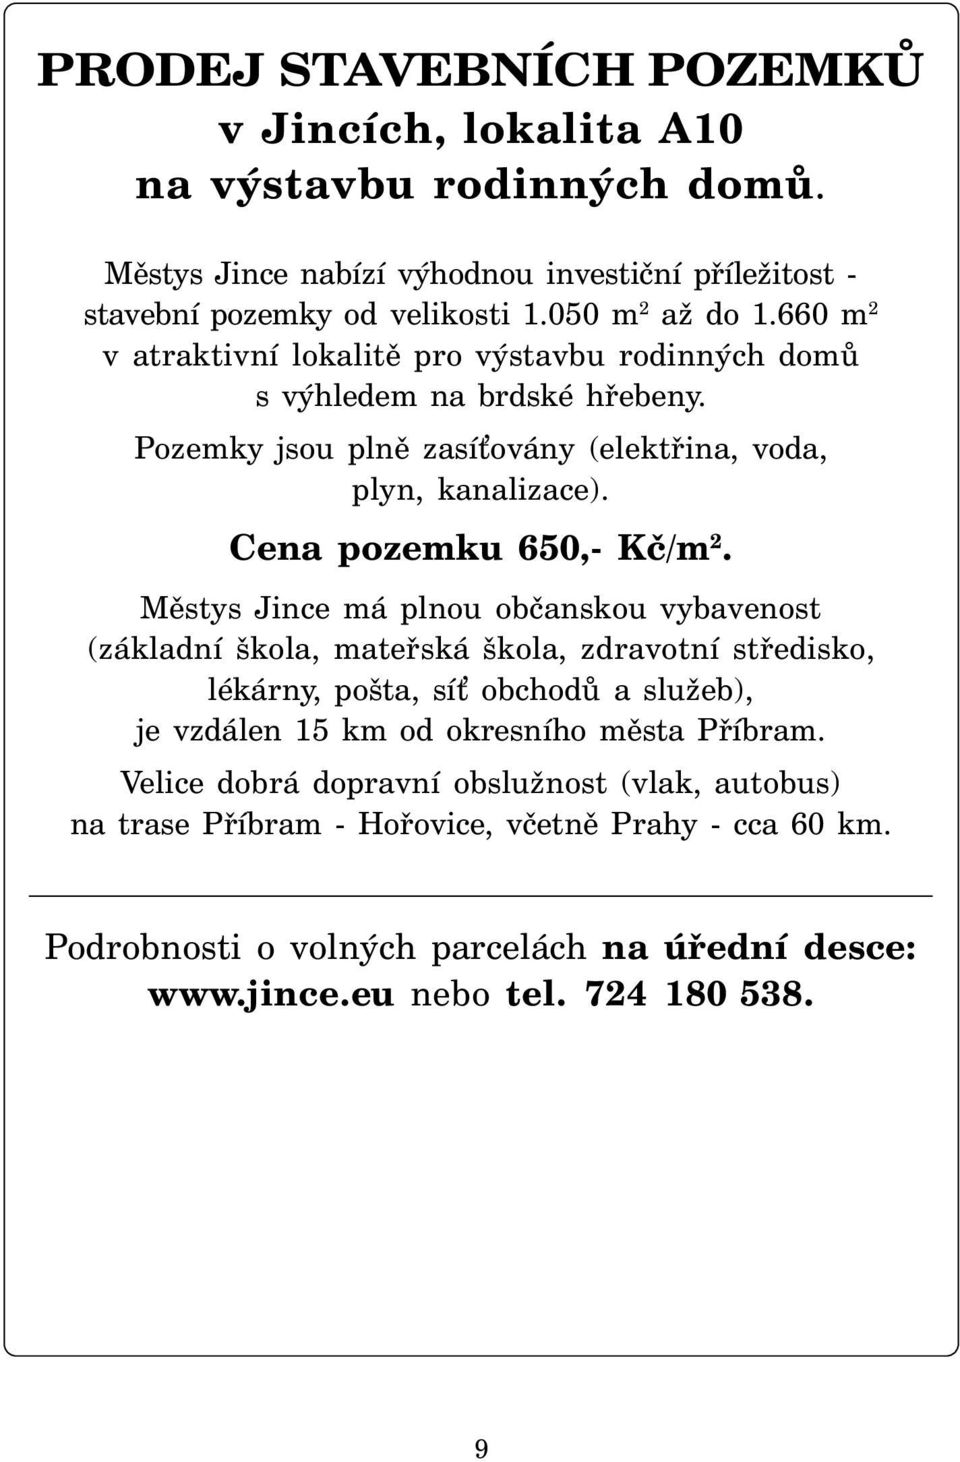 Městys Jince má plnou občanskou vybavenost (základní škola, mateřská škola, zdravotní středisko, lékárny, pošta, sí obchodů a služeb), je vzdálen 15 km od okresního města Příbram.